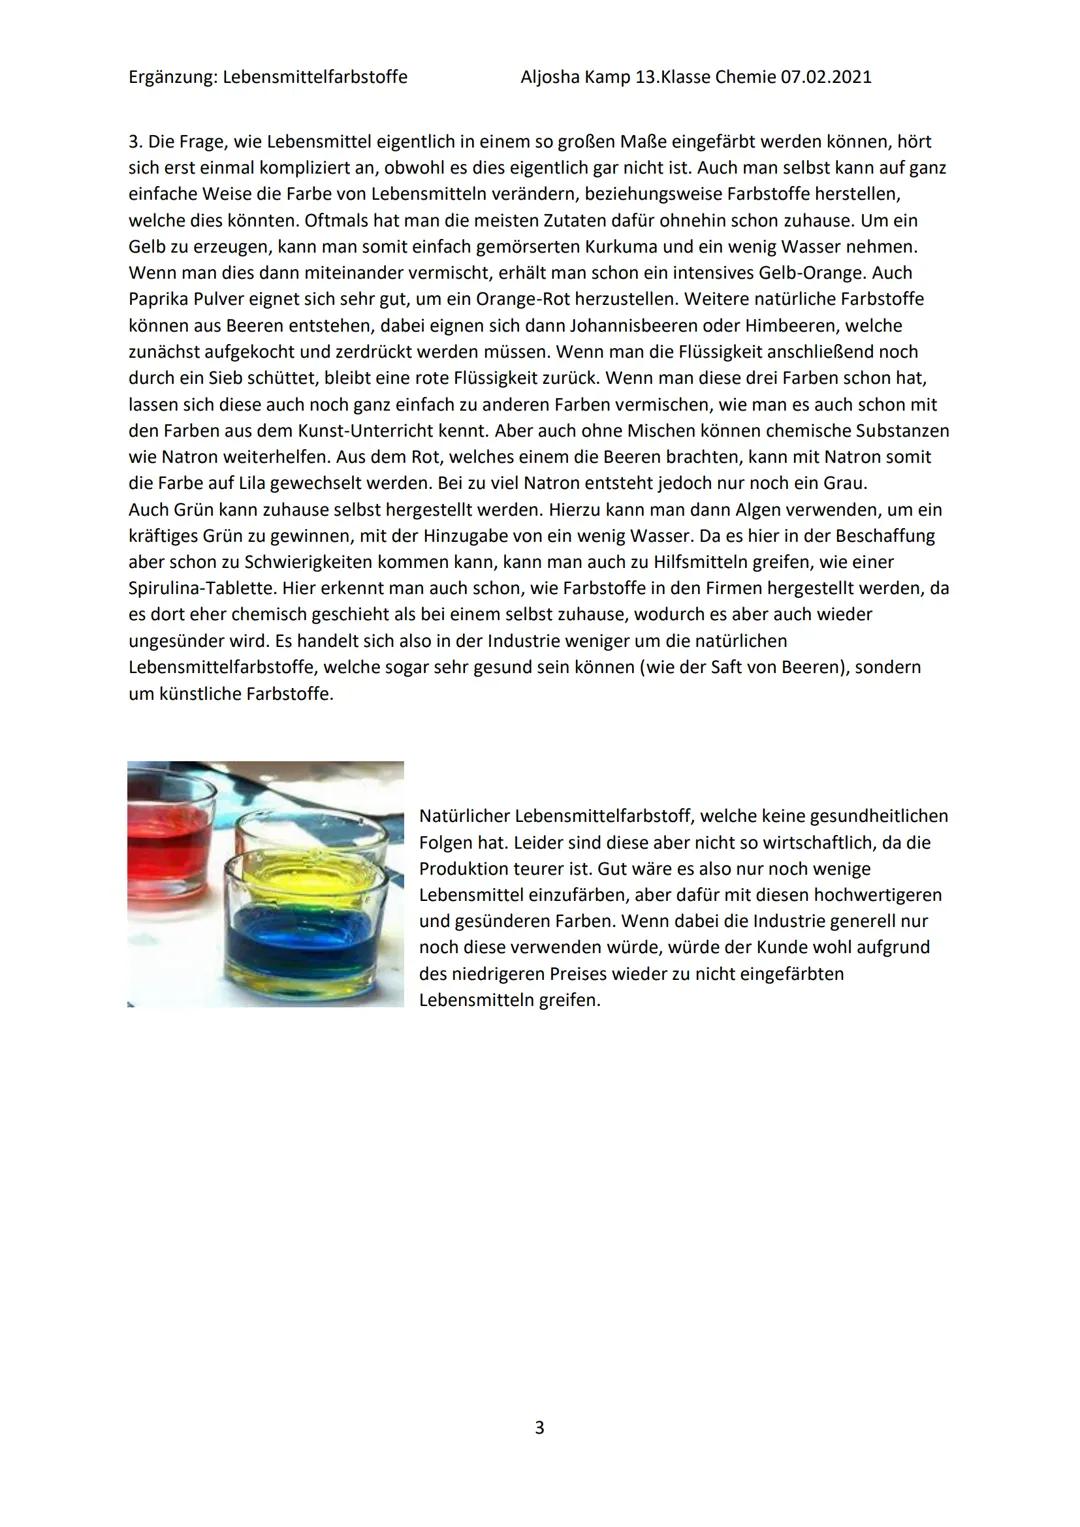 Lebensmittelfarbstoffe
1. Natürliche und synthetische Farbstoffe
2 Geschichte der Lebensmittelfärbung
3. Einteilung in E-Nummern
4. Nebenwir